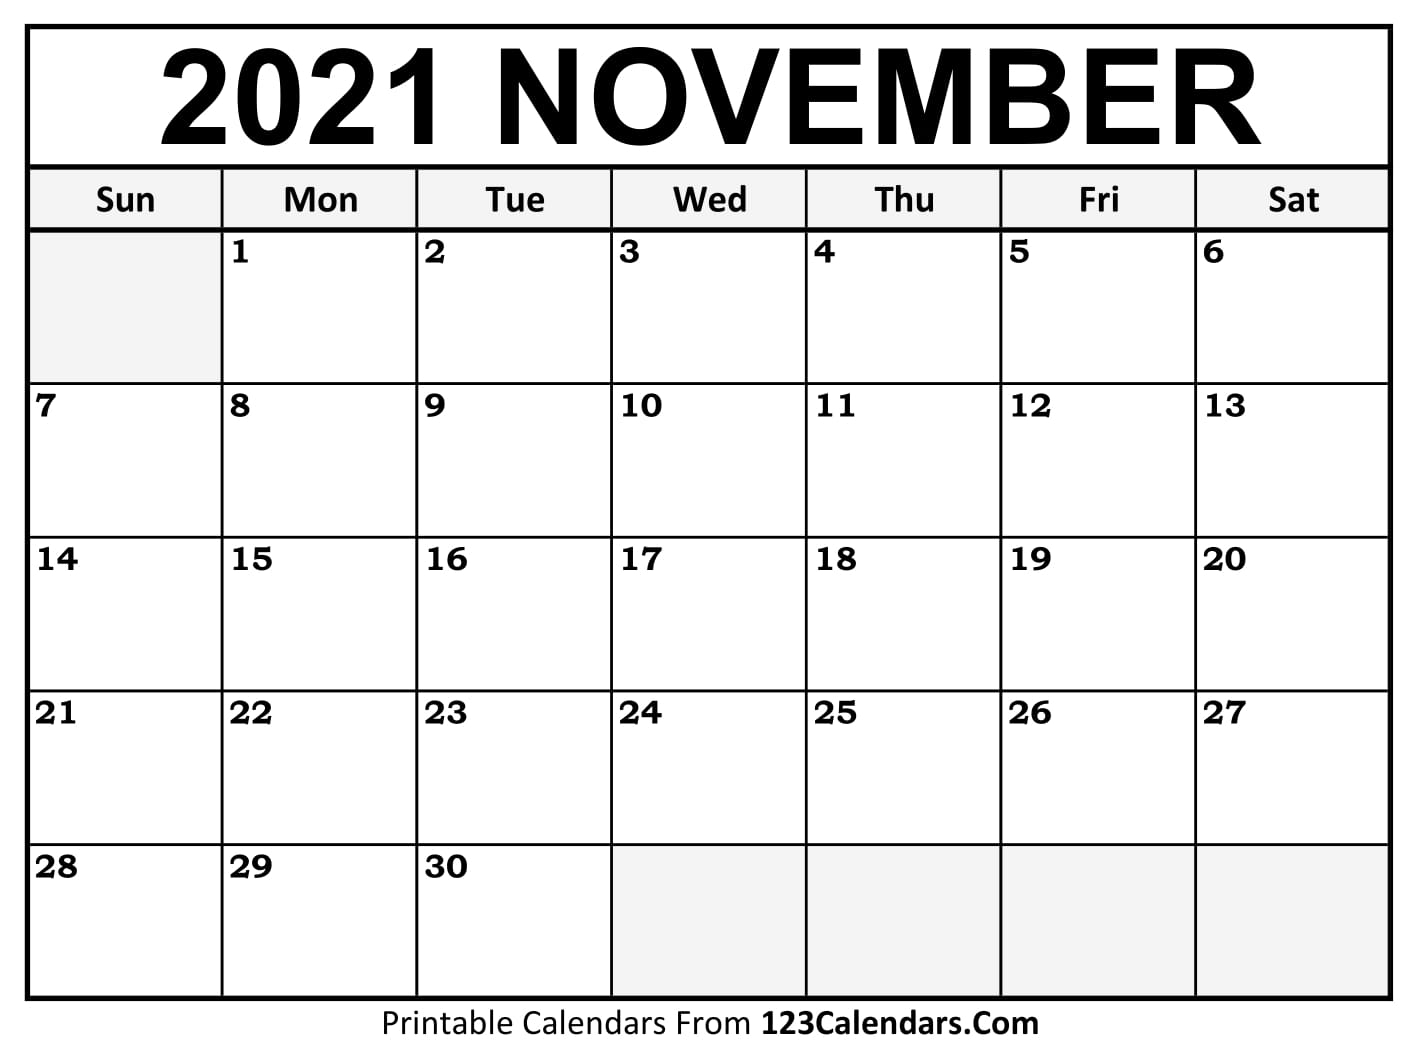 Printable November 2021 Calendar Templates - 123Calendars